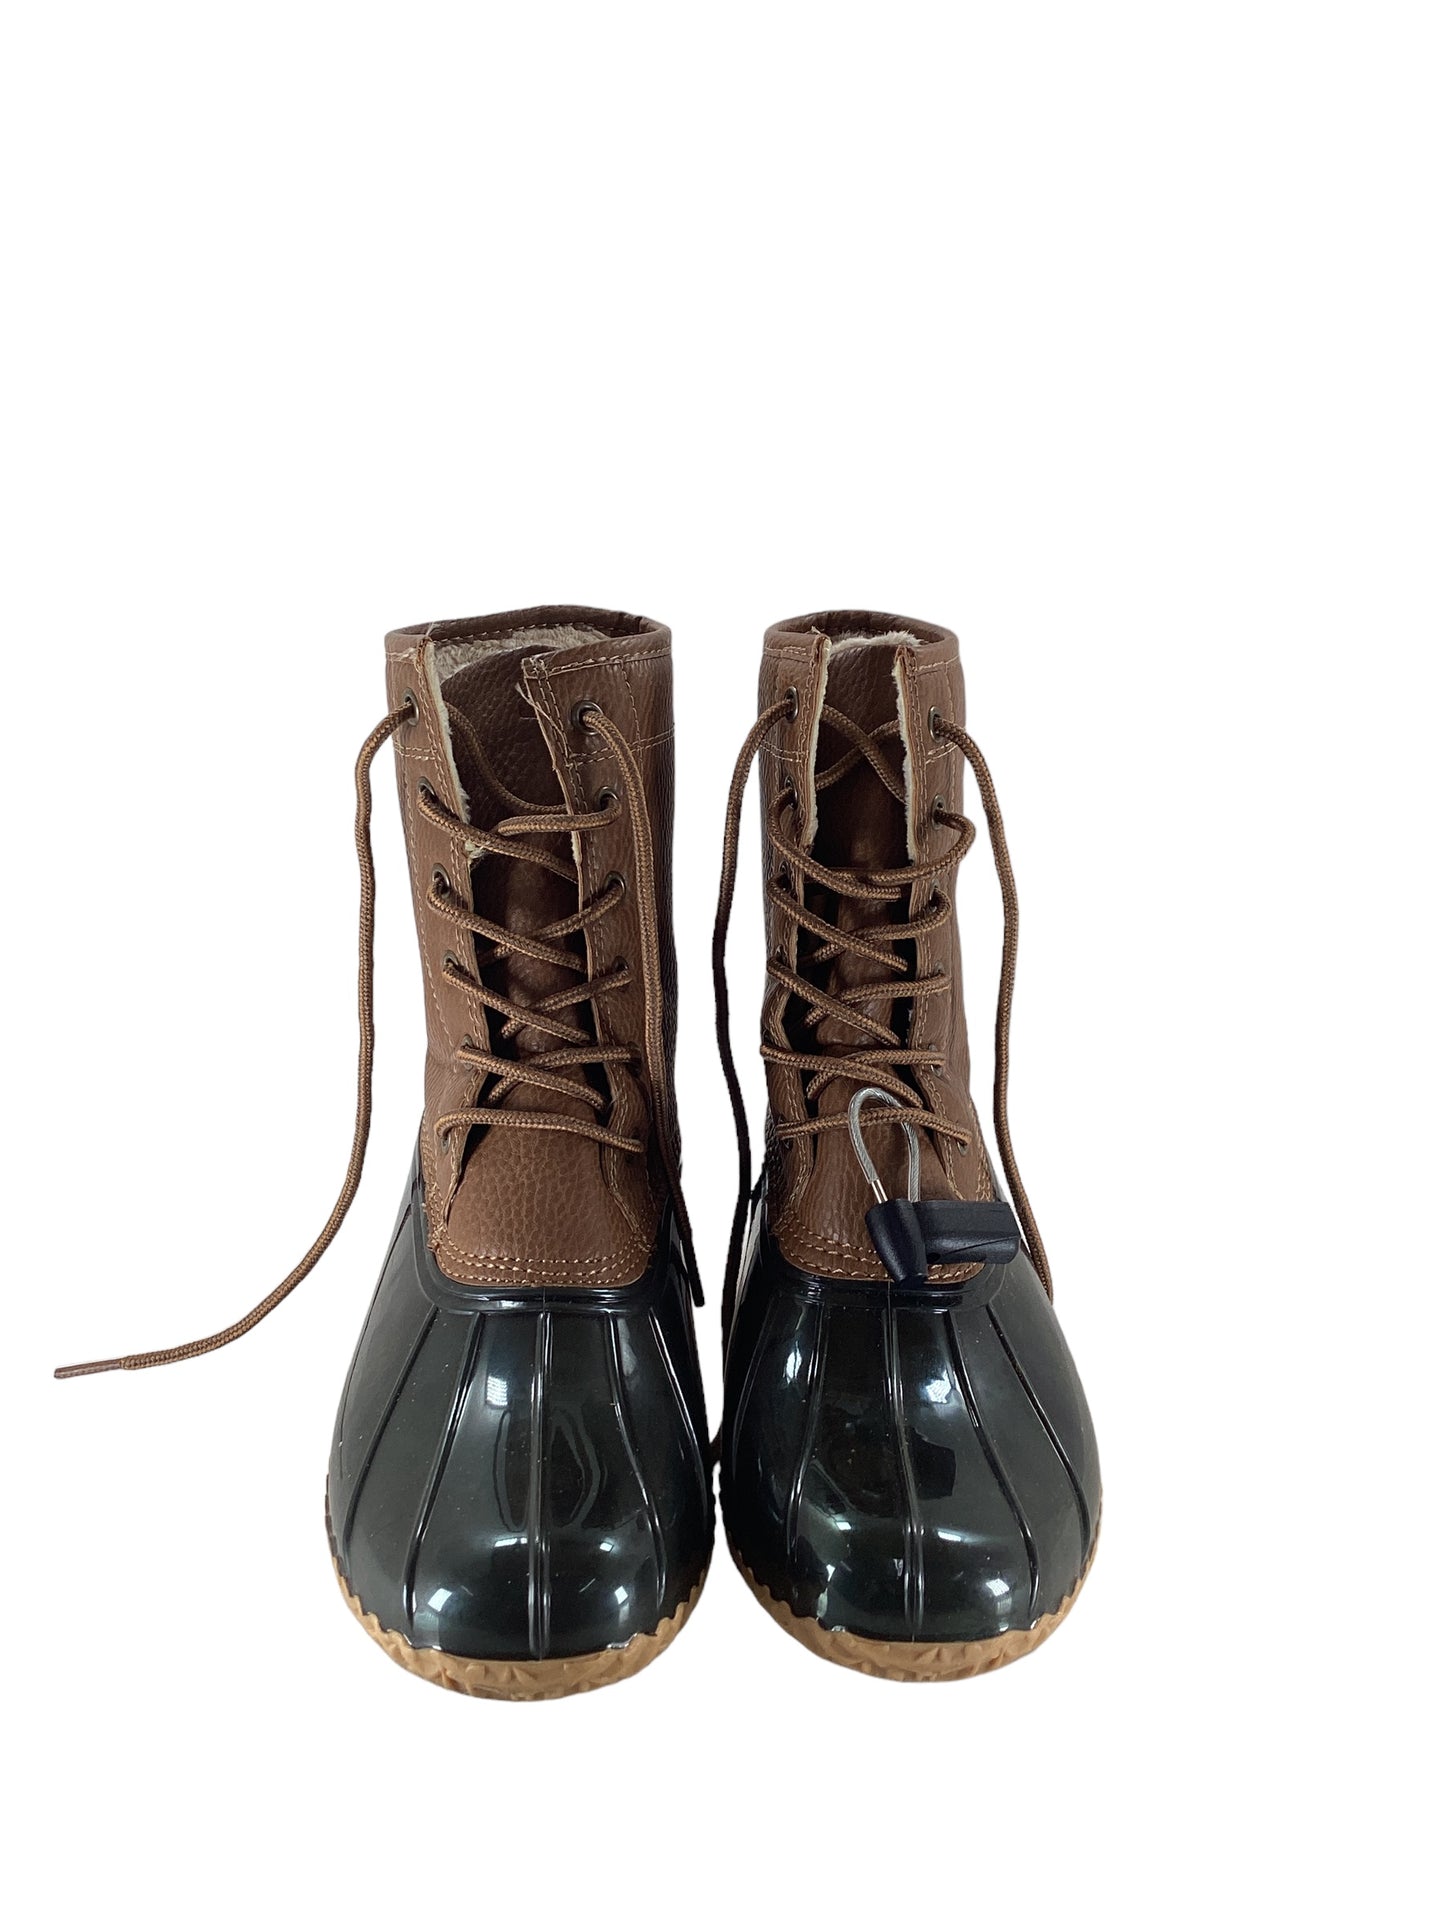 Boots Rain By Jambu  Size: 8